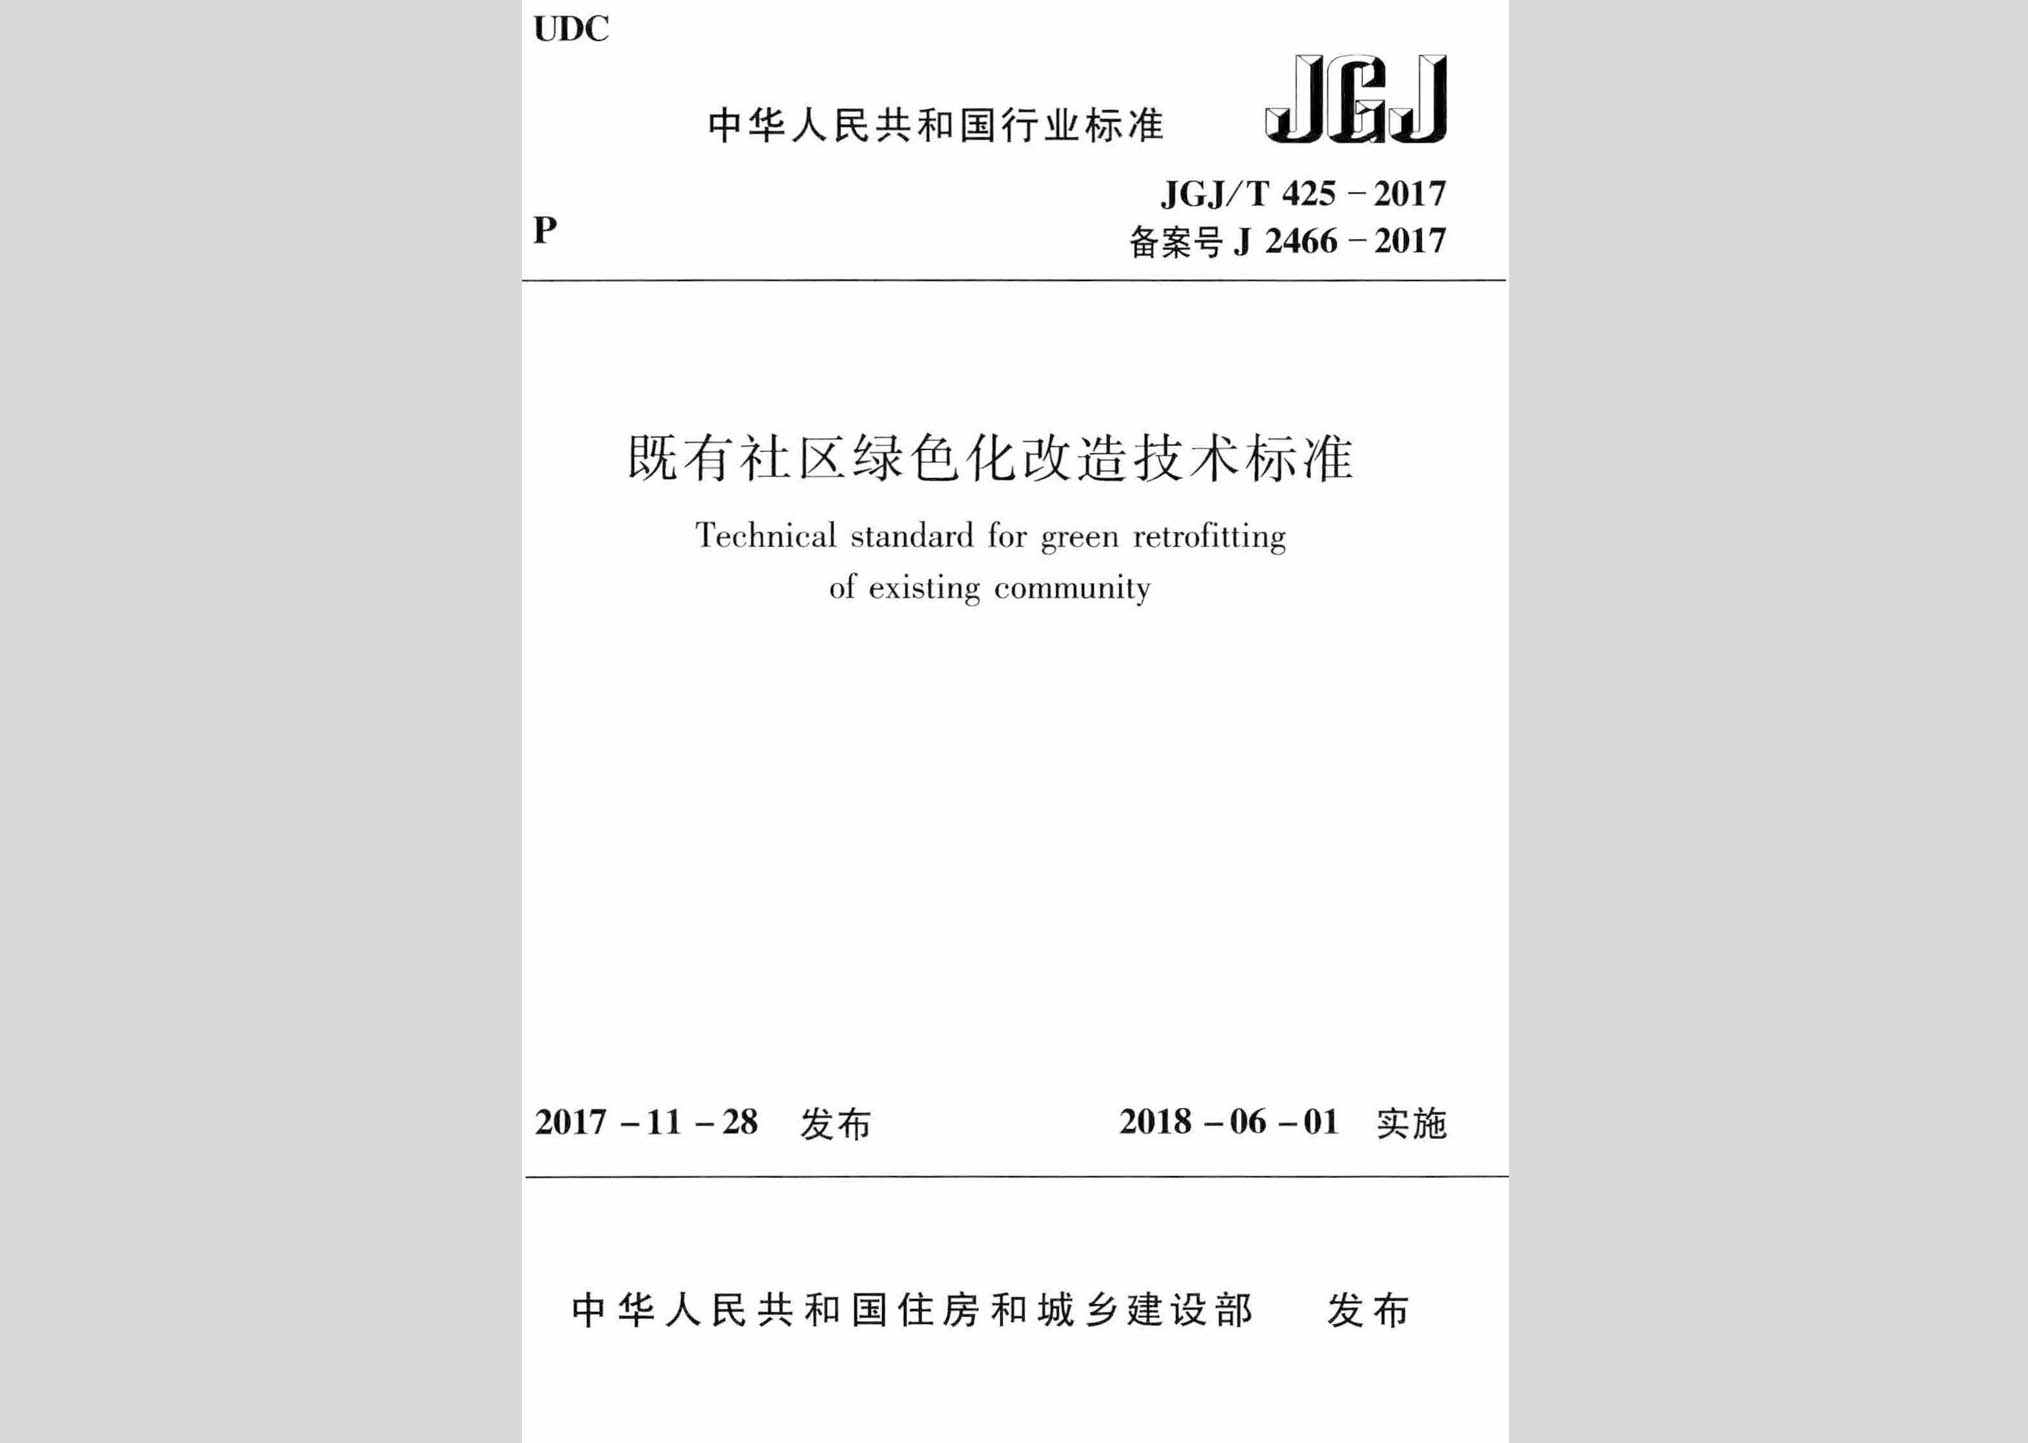 JGJ/T425-2017：既有社区绿色化改造技术标准